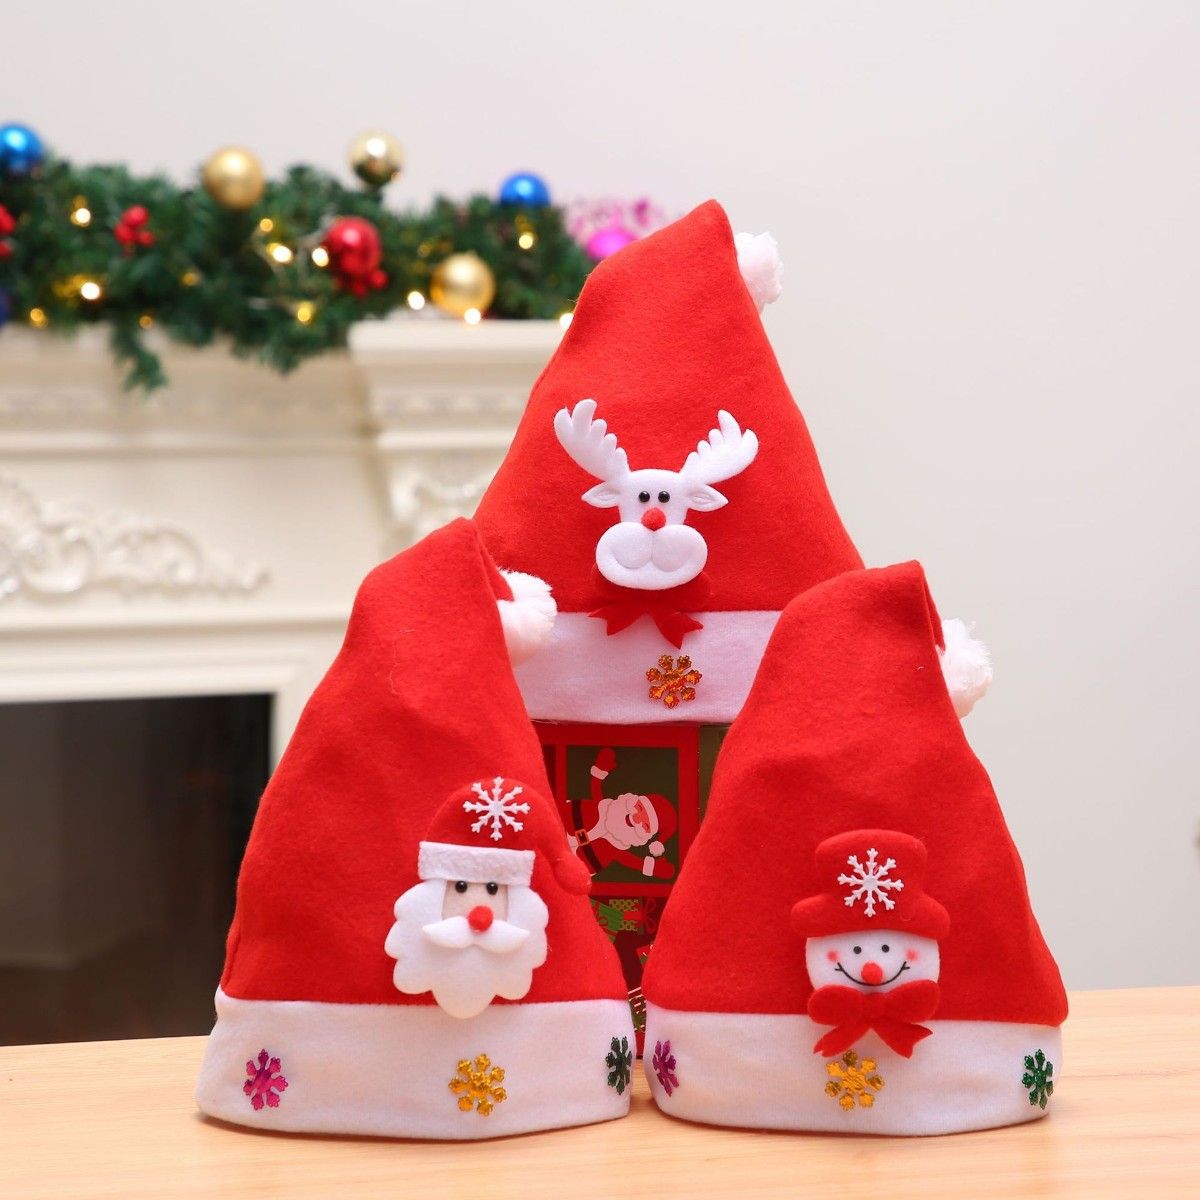 大人用 クリスマス 帽子 サンタ 3点セット ハット 男女兼用 コスプレ コスチューム用 小物 赤色 パーティー ジングルベル